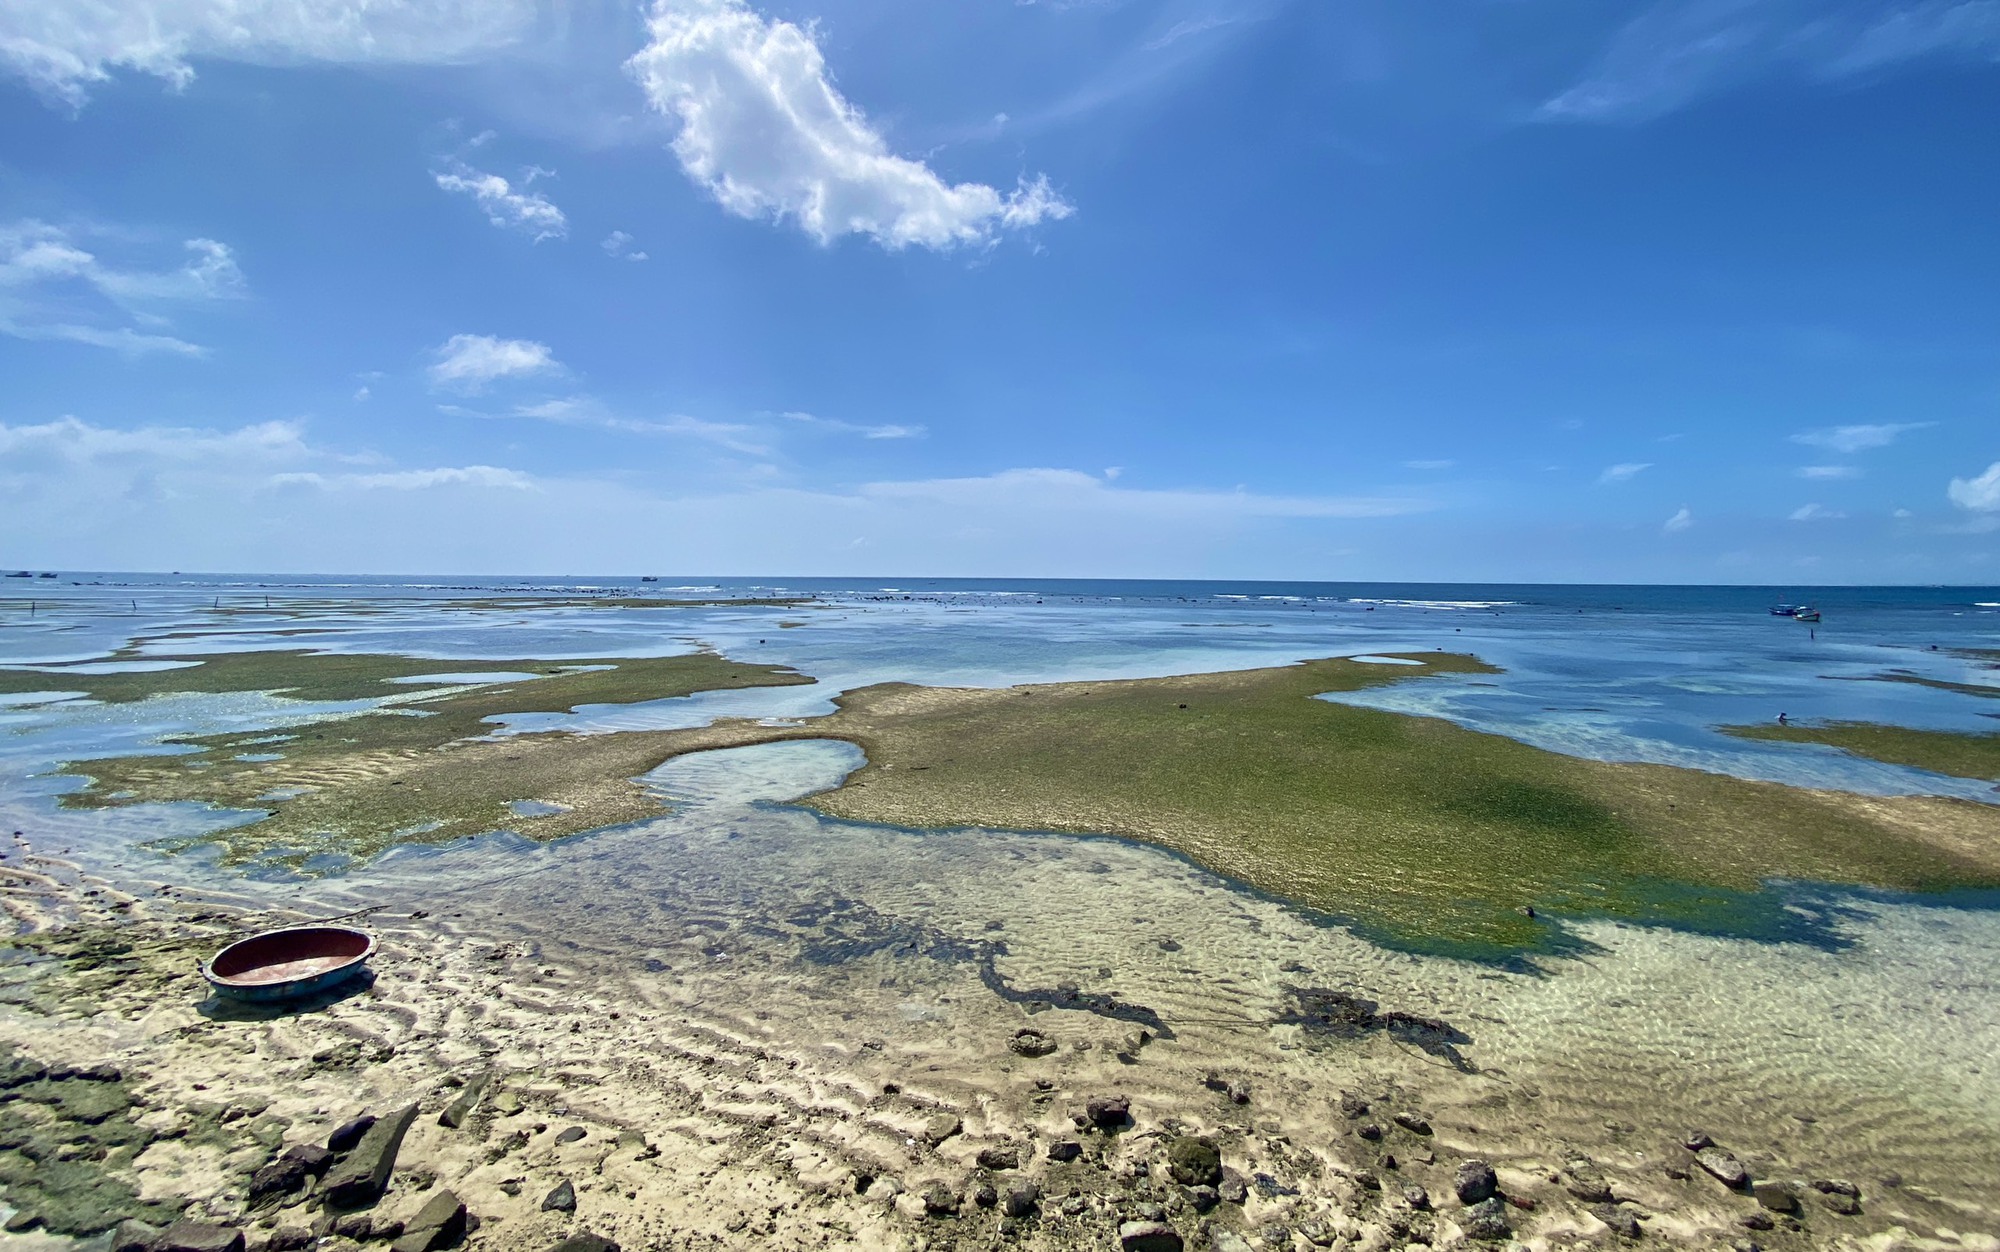 Rong mơ lá hẹ mọc ở gần bờ trên đảo Lý Sơn đẹp như một bức tranh - Ảnh 6.